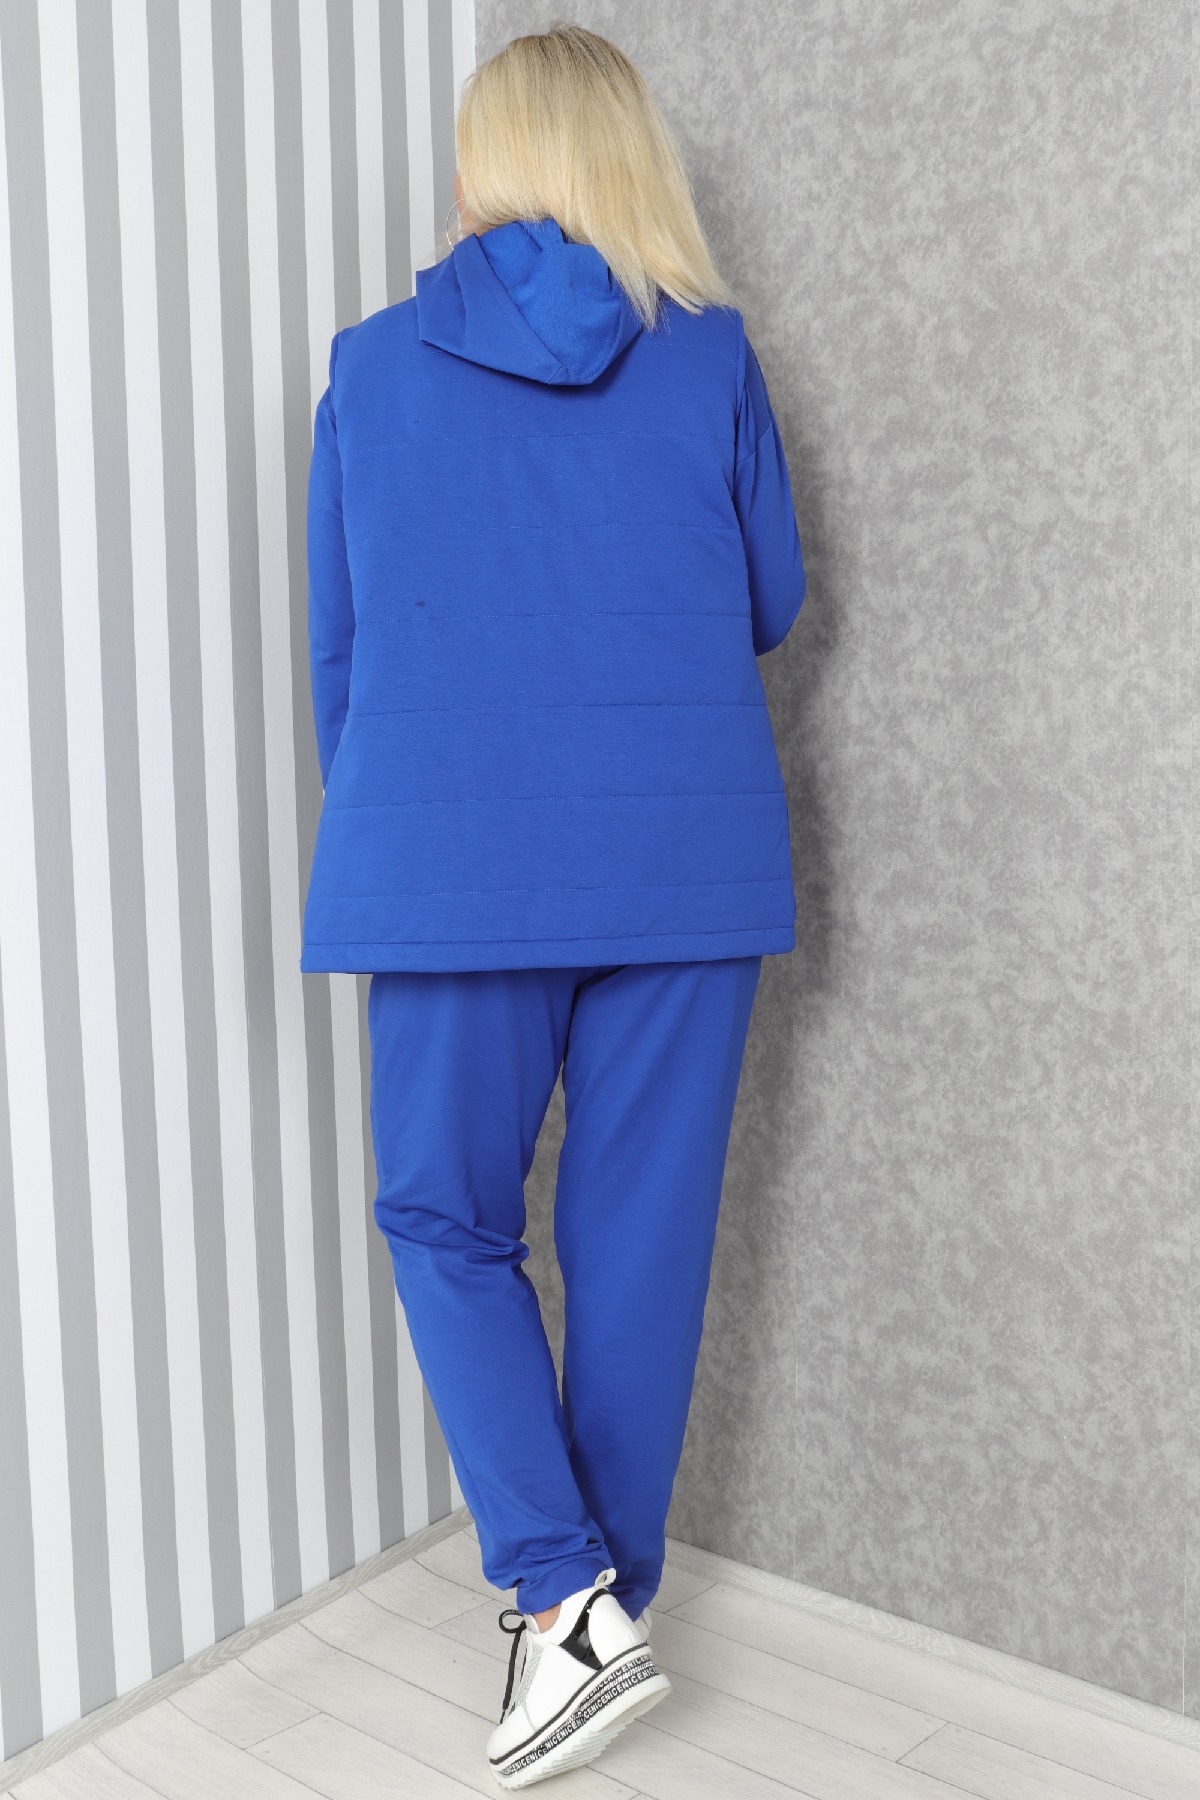 Women's 3 Piece Suits-Bright Blue